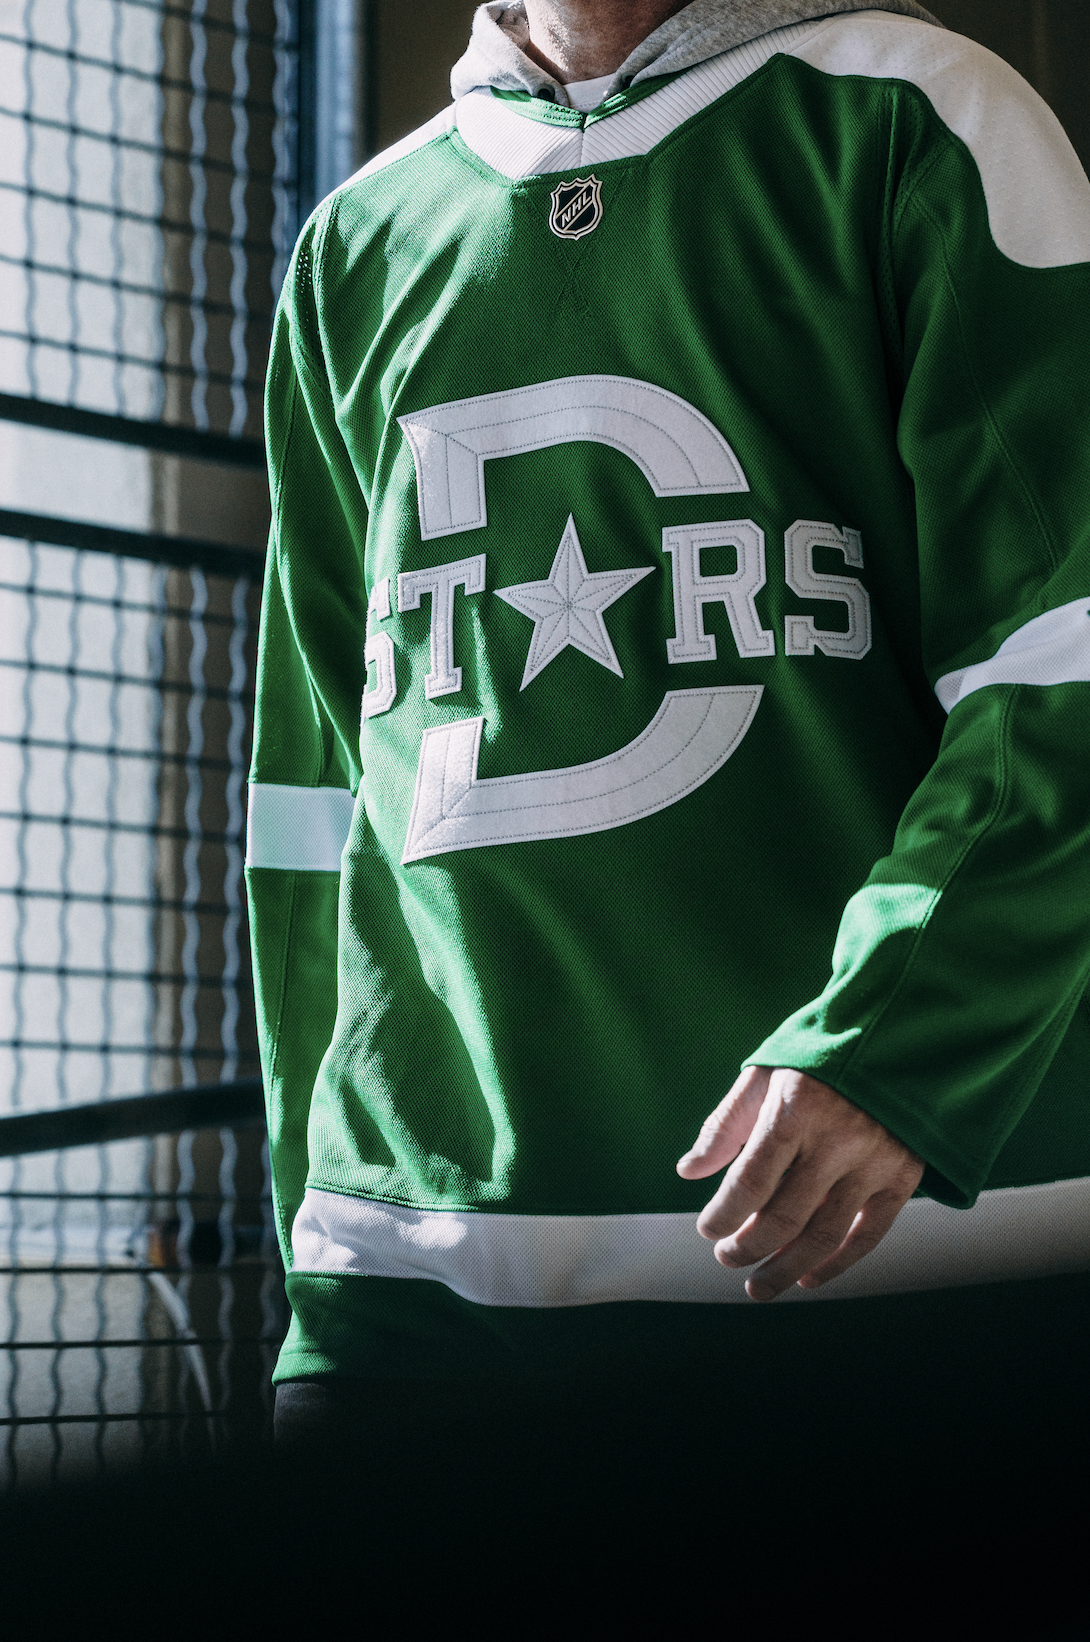  Dallas Stars reveal 2020 Winter Classic uniform